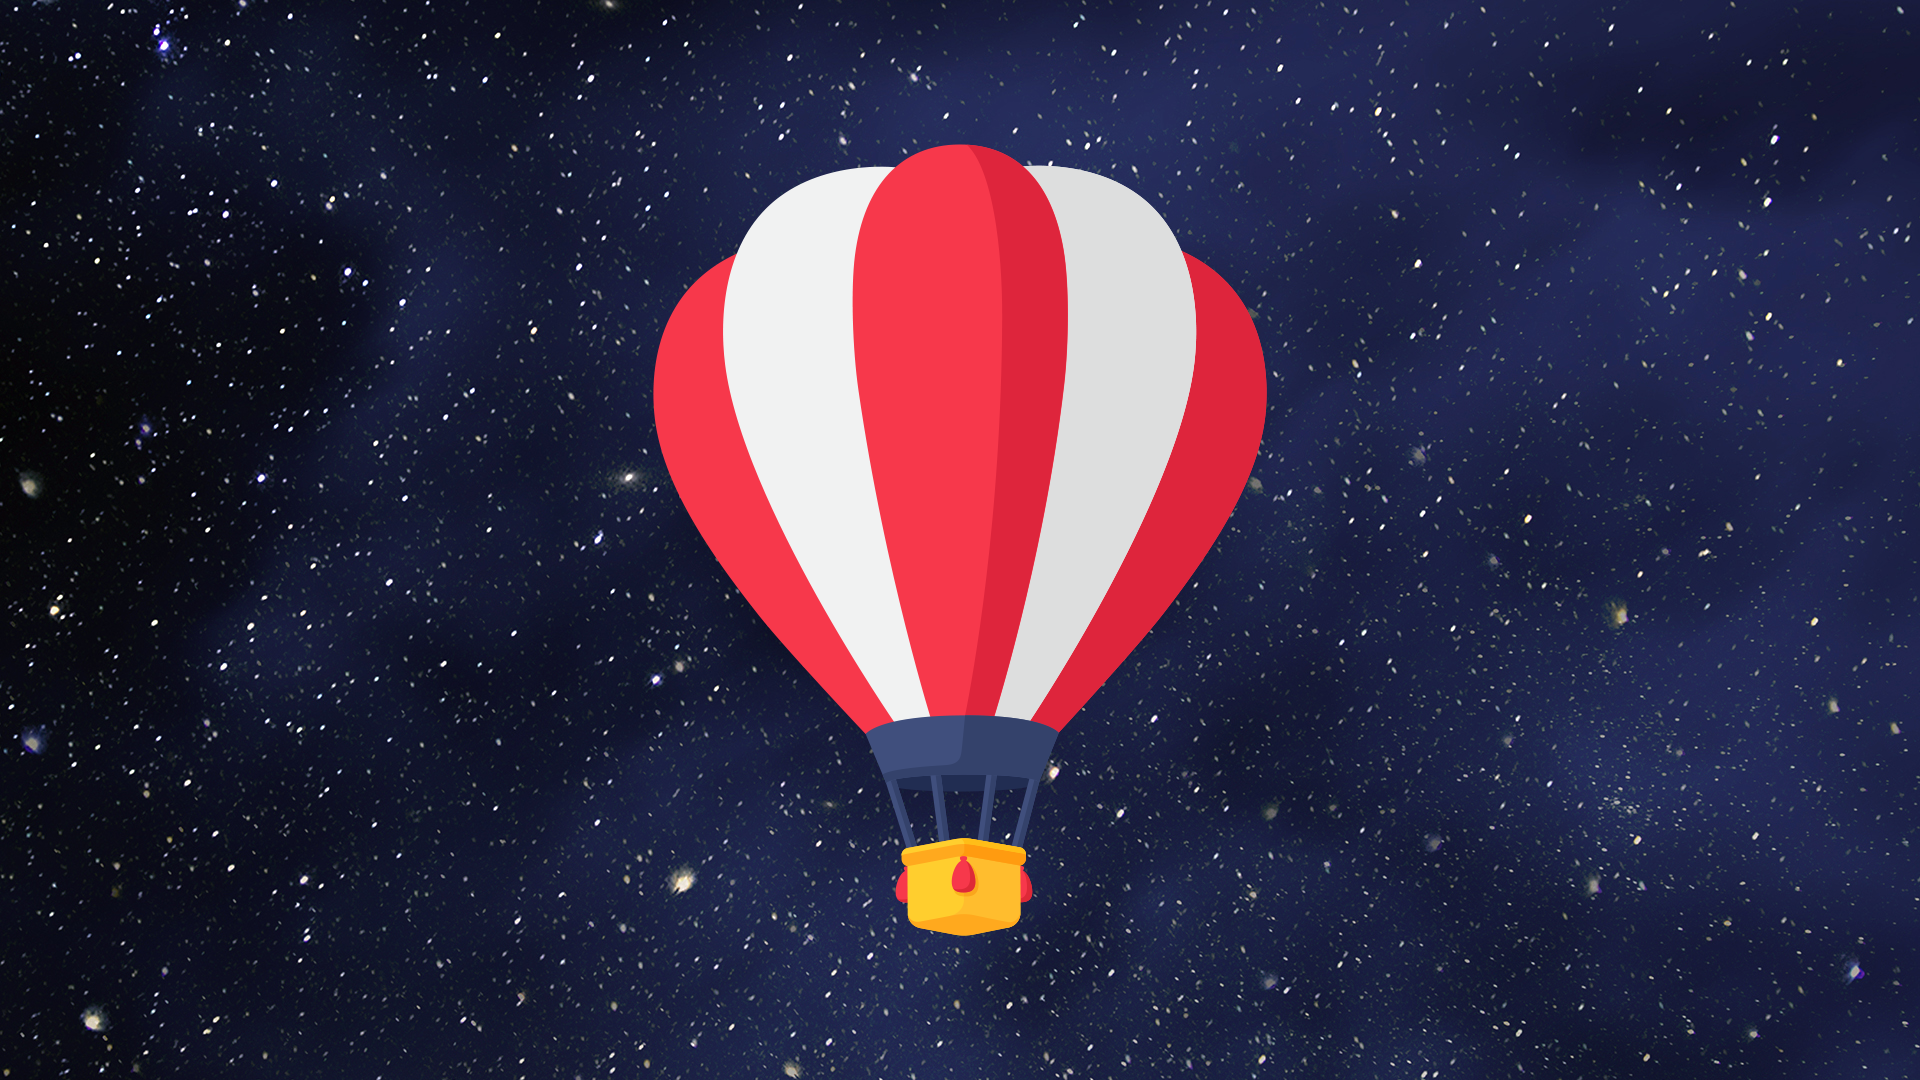 Hot air balloon emoji